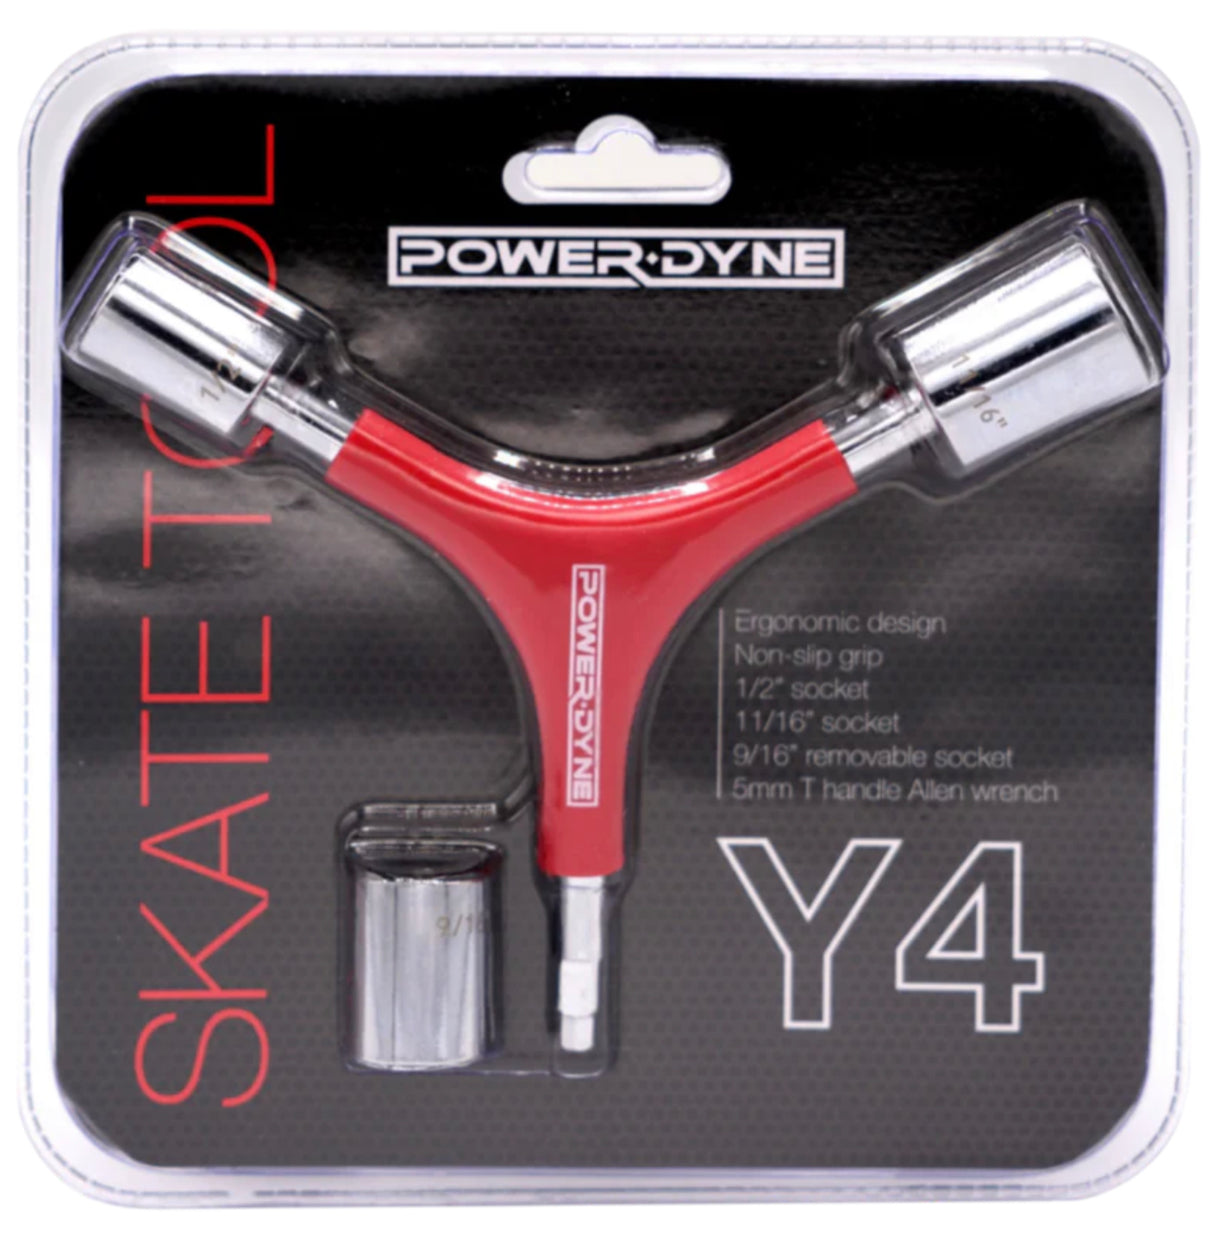 PowerDyne Y4 Skate Tool